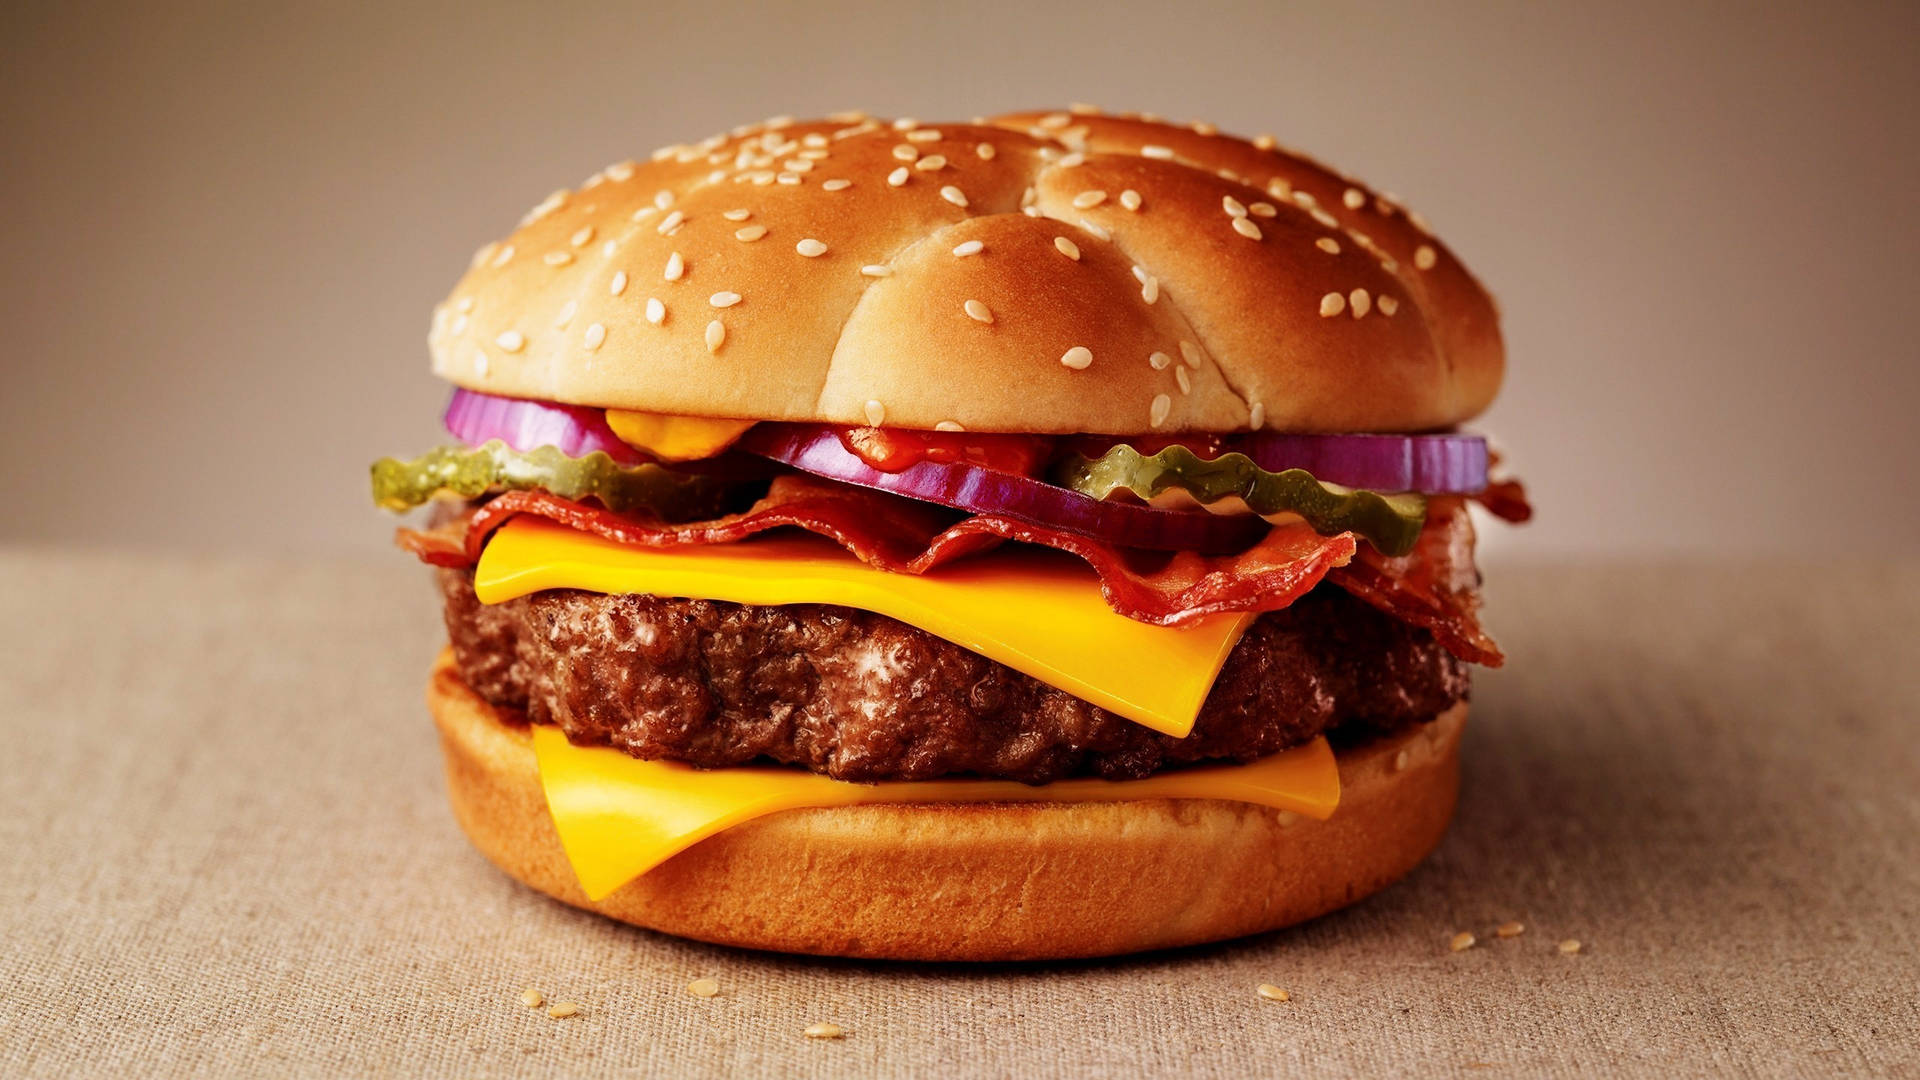 Cheeseburger 2560 X 1440 Wallpaper